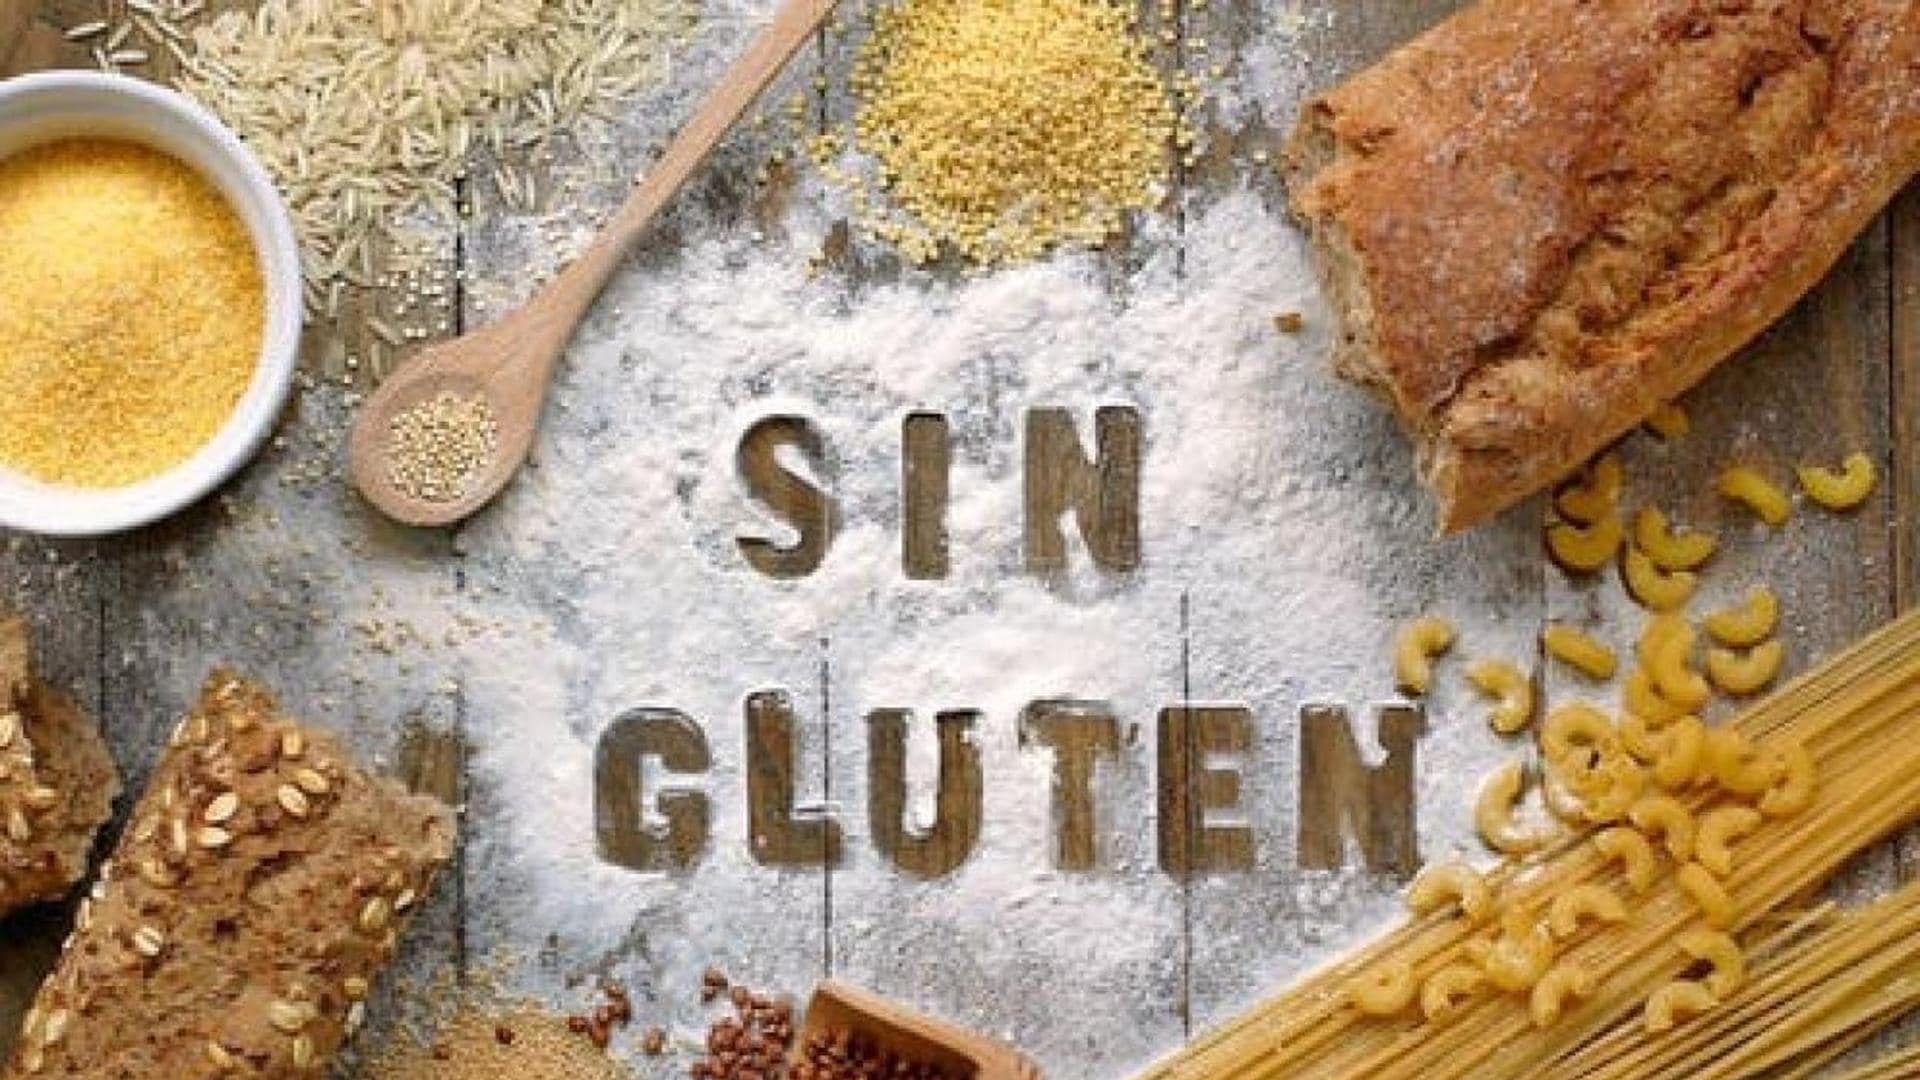 comer-sin-gluten-es-siempre-mas-sano-y-otros-bulos-sobre-la-enfermedad-celiaca-|-el-comercio:-diario-de-asturias